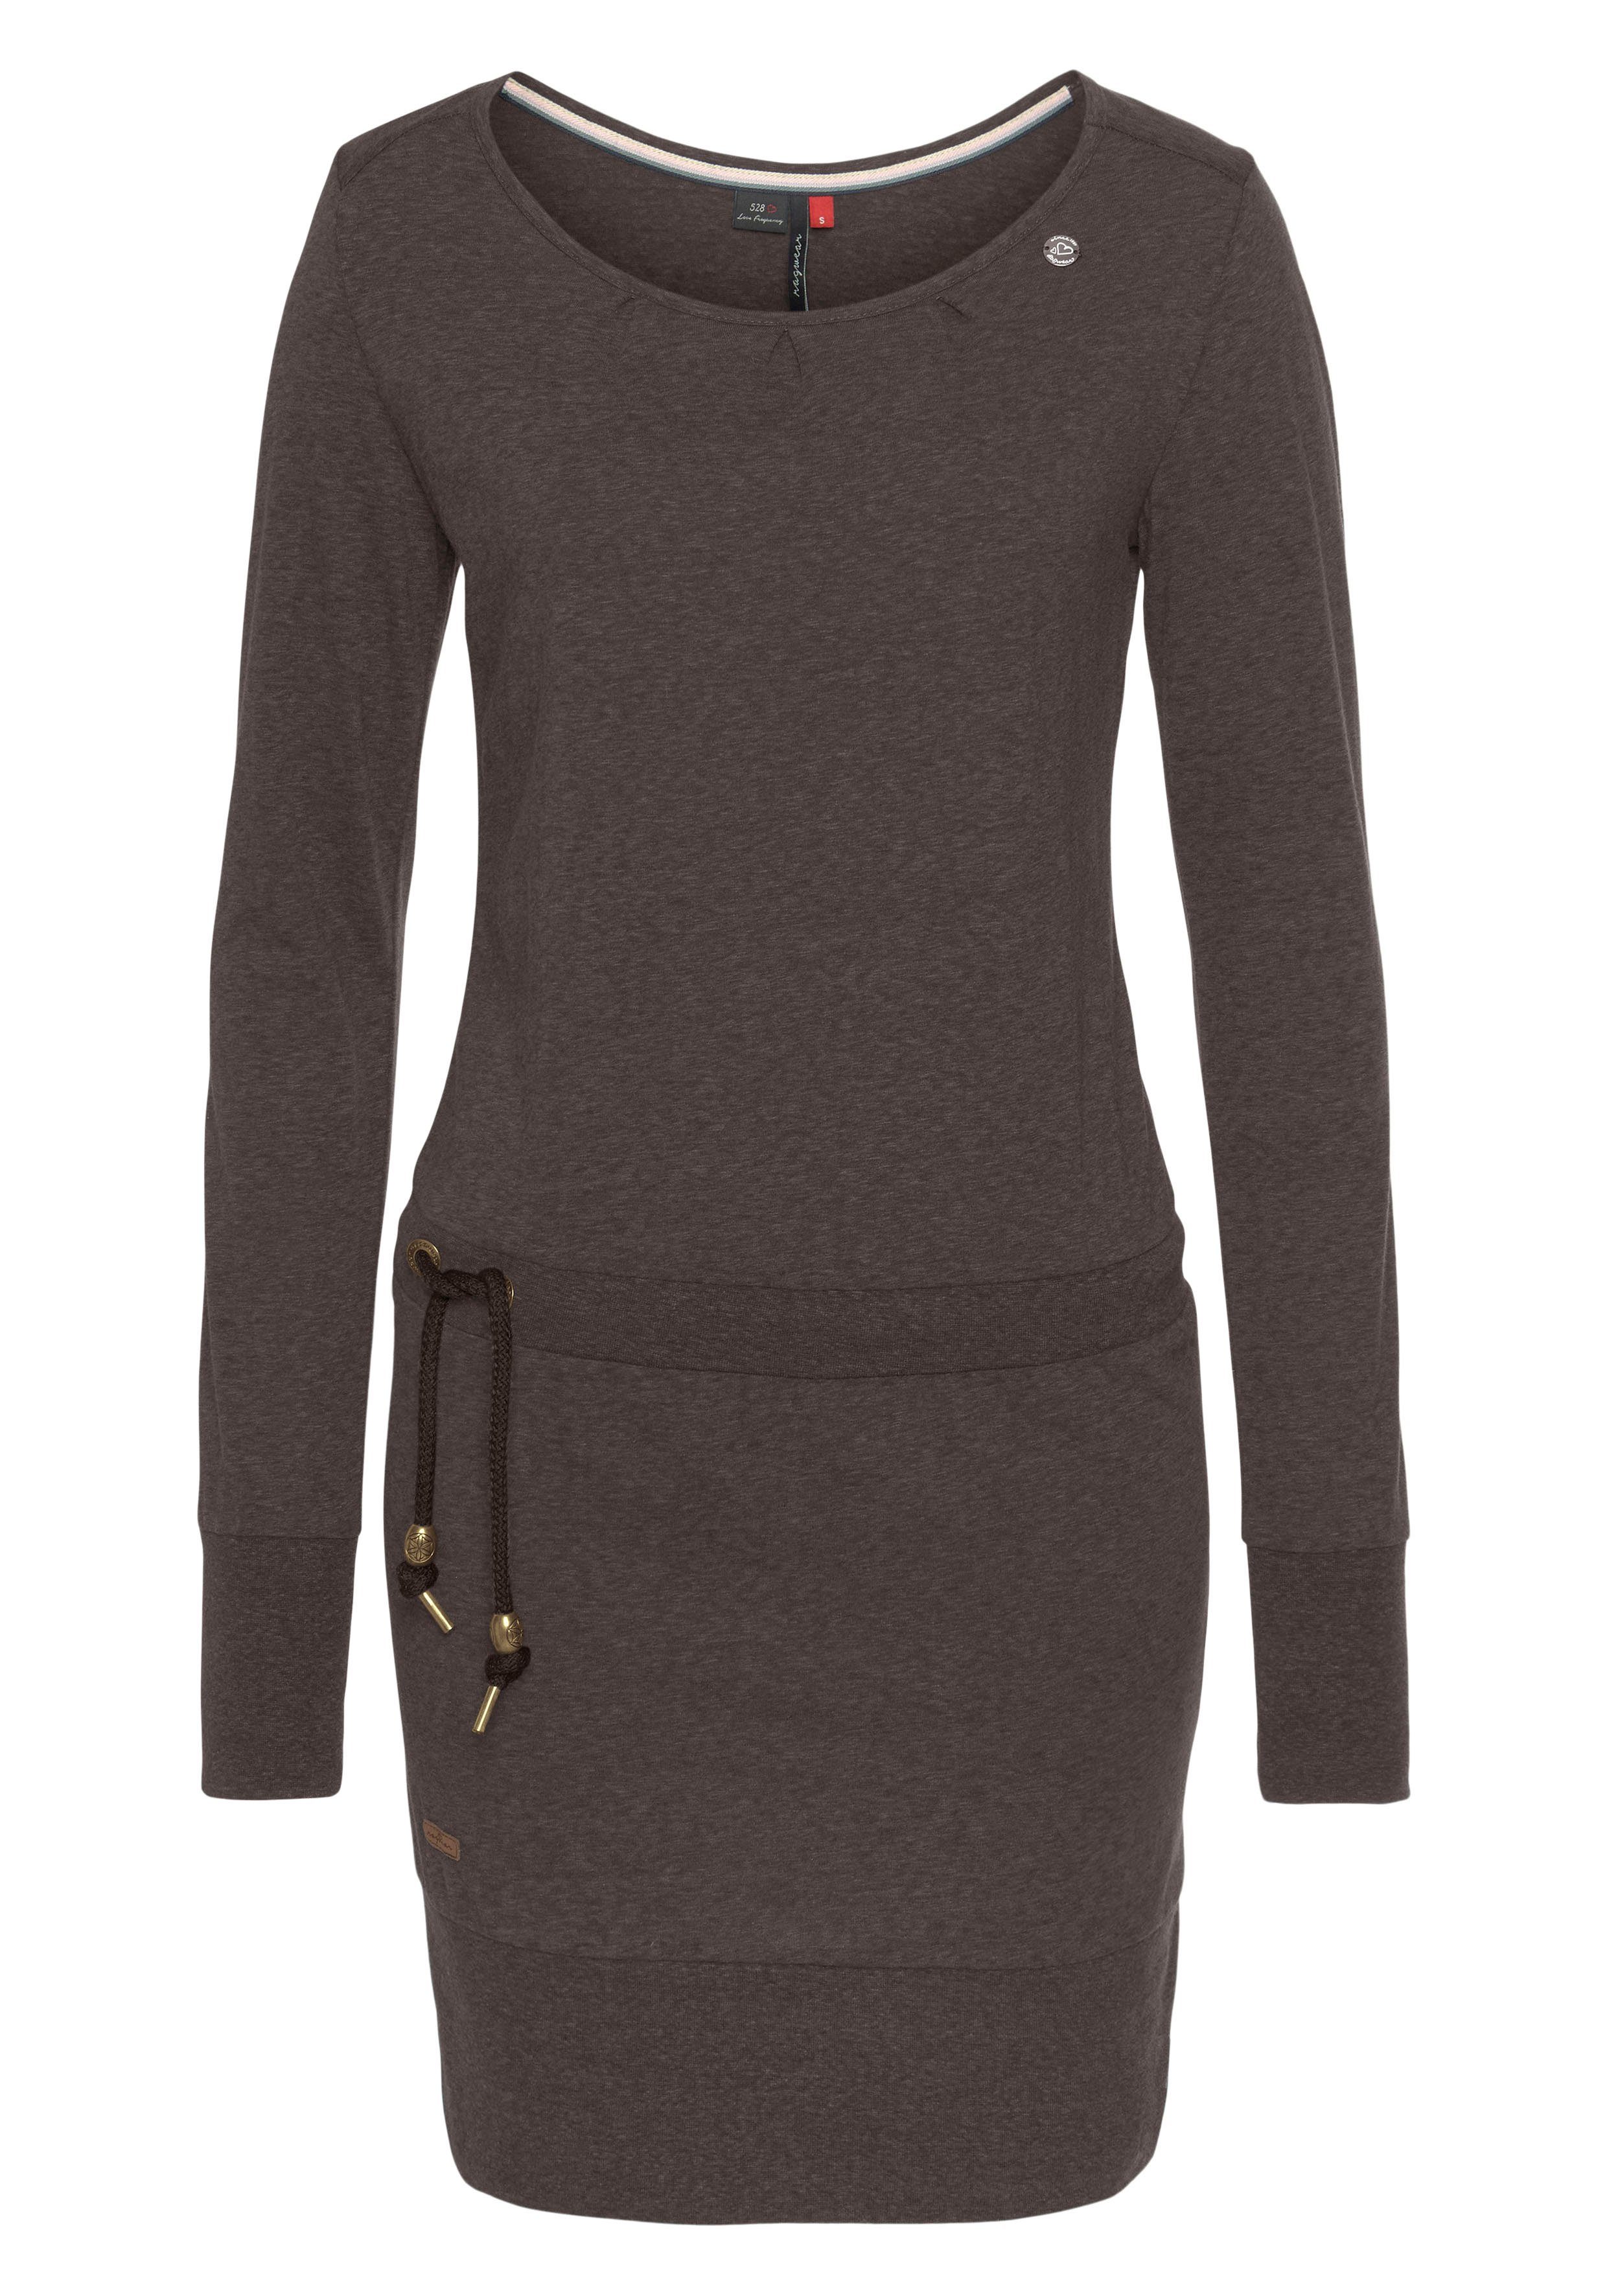 Ragwear Jerseykleid dark ALEXA Zierperlen-Besatz kontrastigen 6022 choco und Kordelzug mit